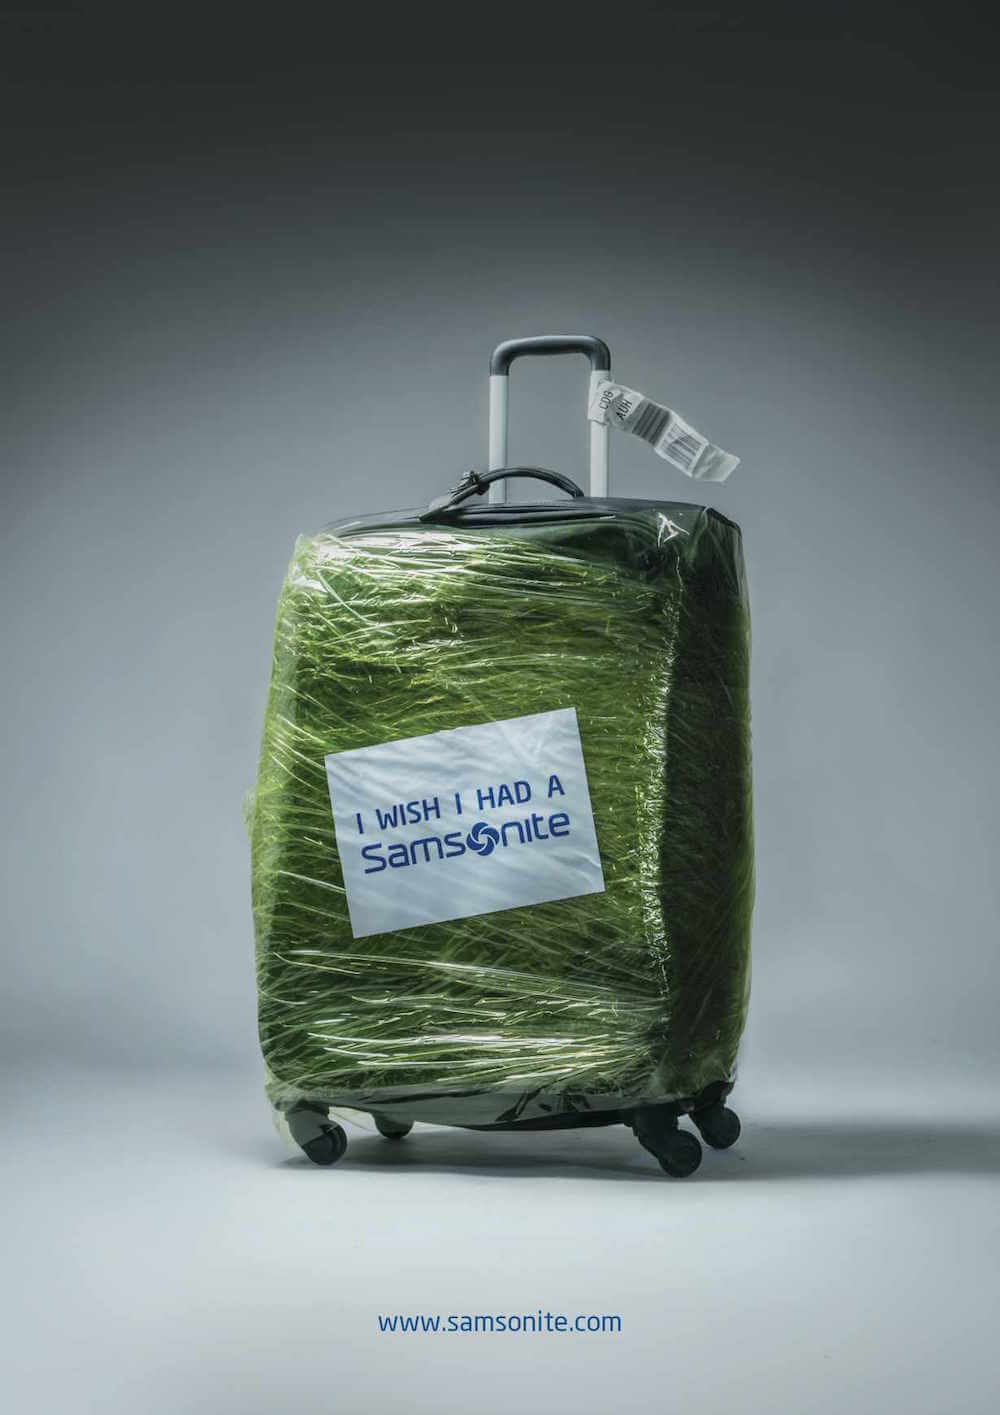 Samsonite embala outras malas de graça em troca de um adesivo "eu queria ter uma Samsonite"